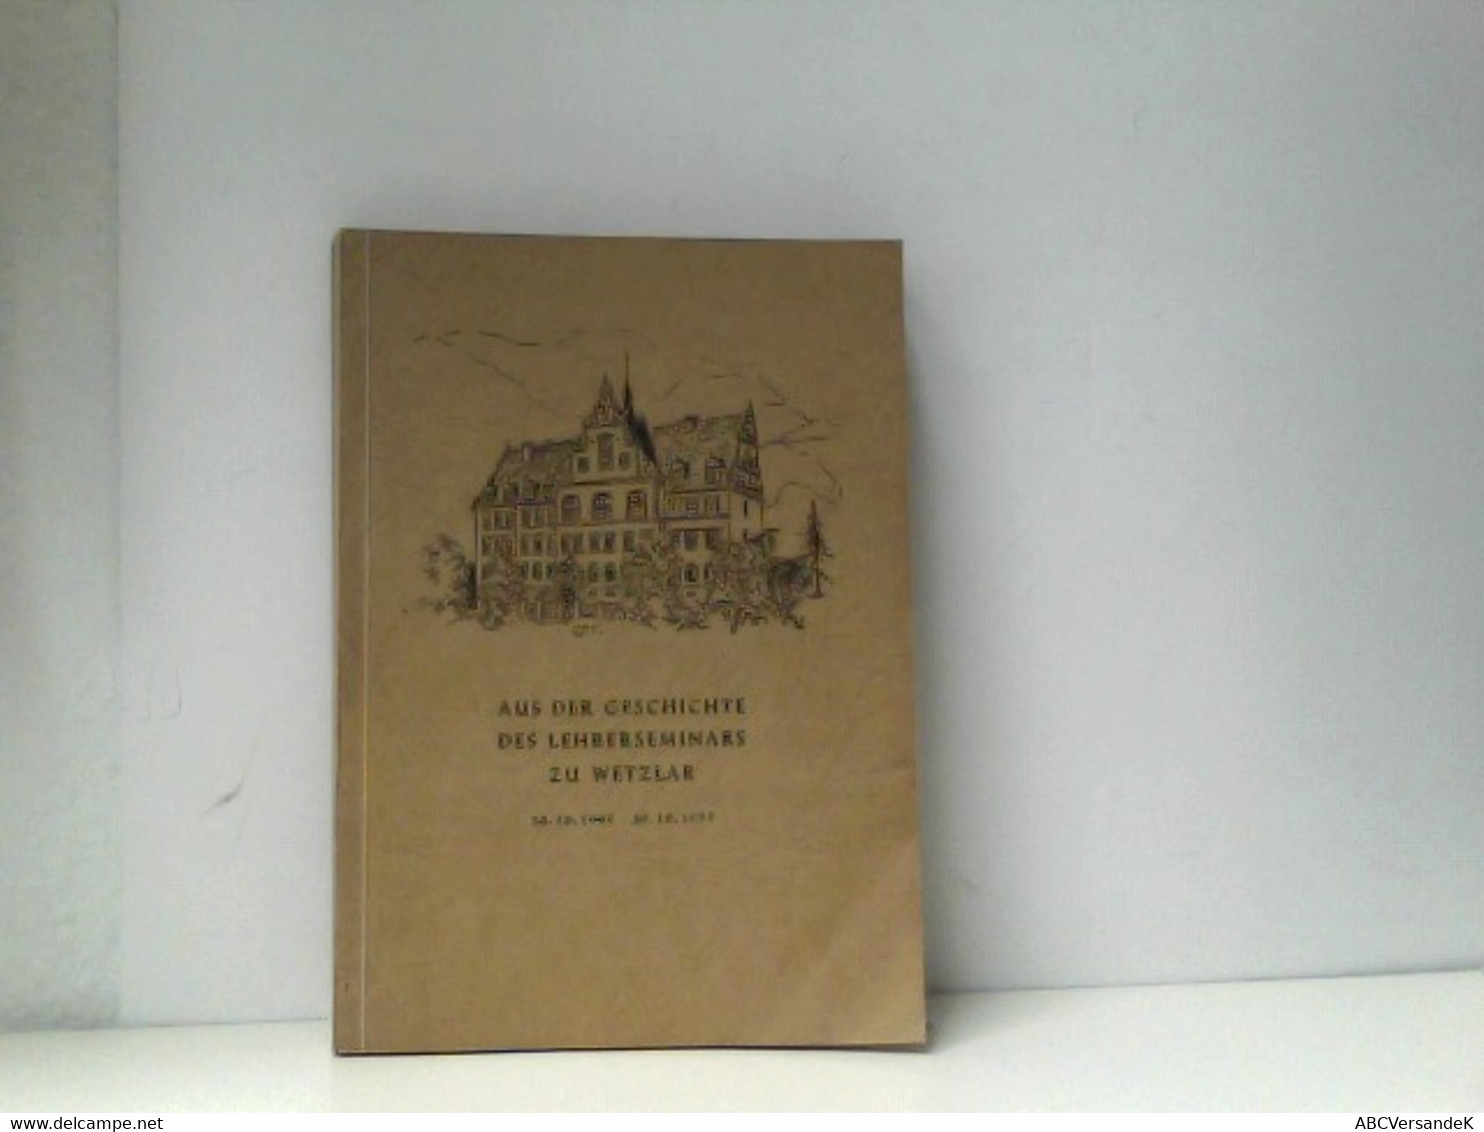 Aus Der Geschichte Des Lehrerseminars Zu Wetzlar. Ein Erinnerungs- Und Gedenkbuch 20.10.1905-20.10.1955. - Hesse